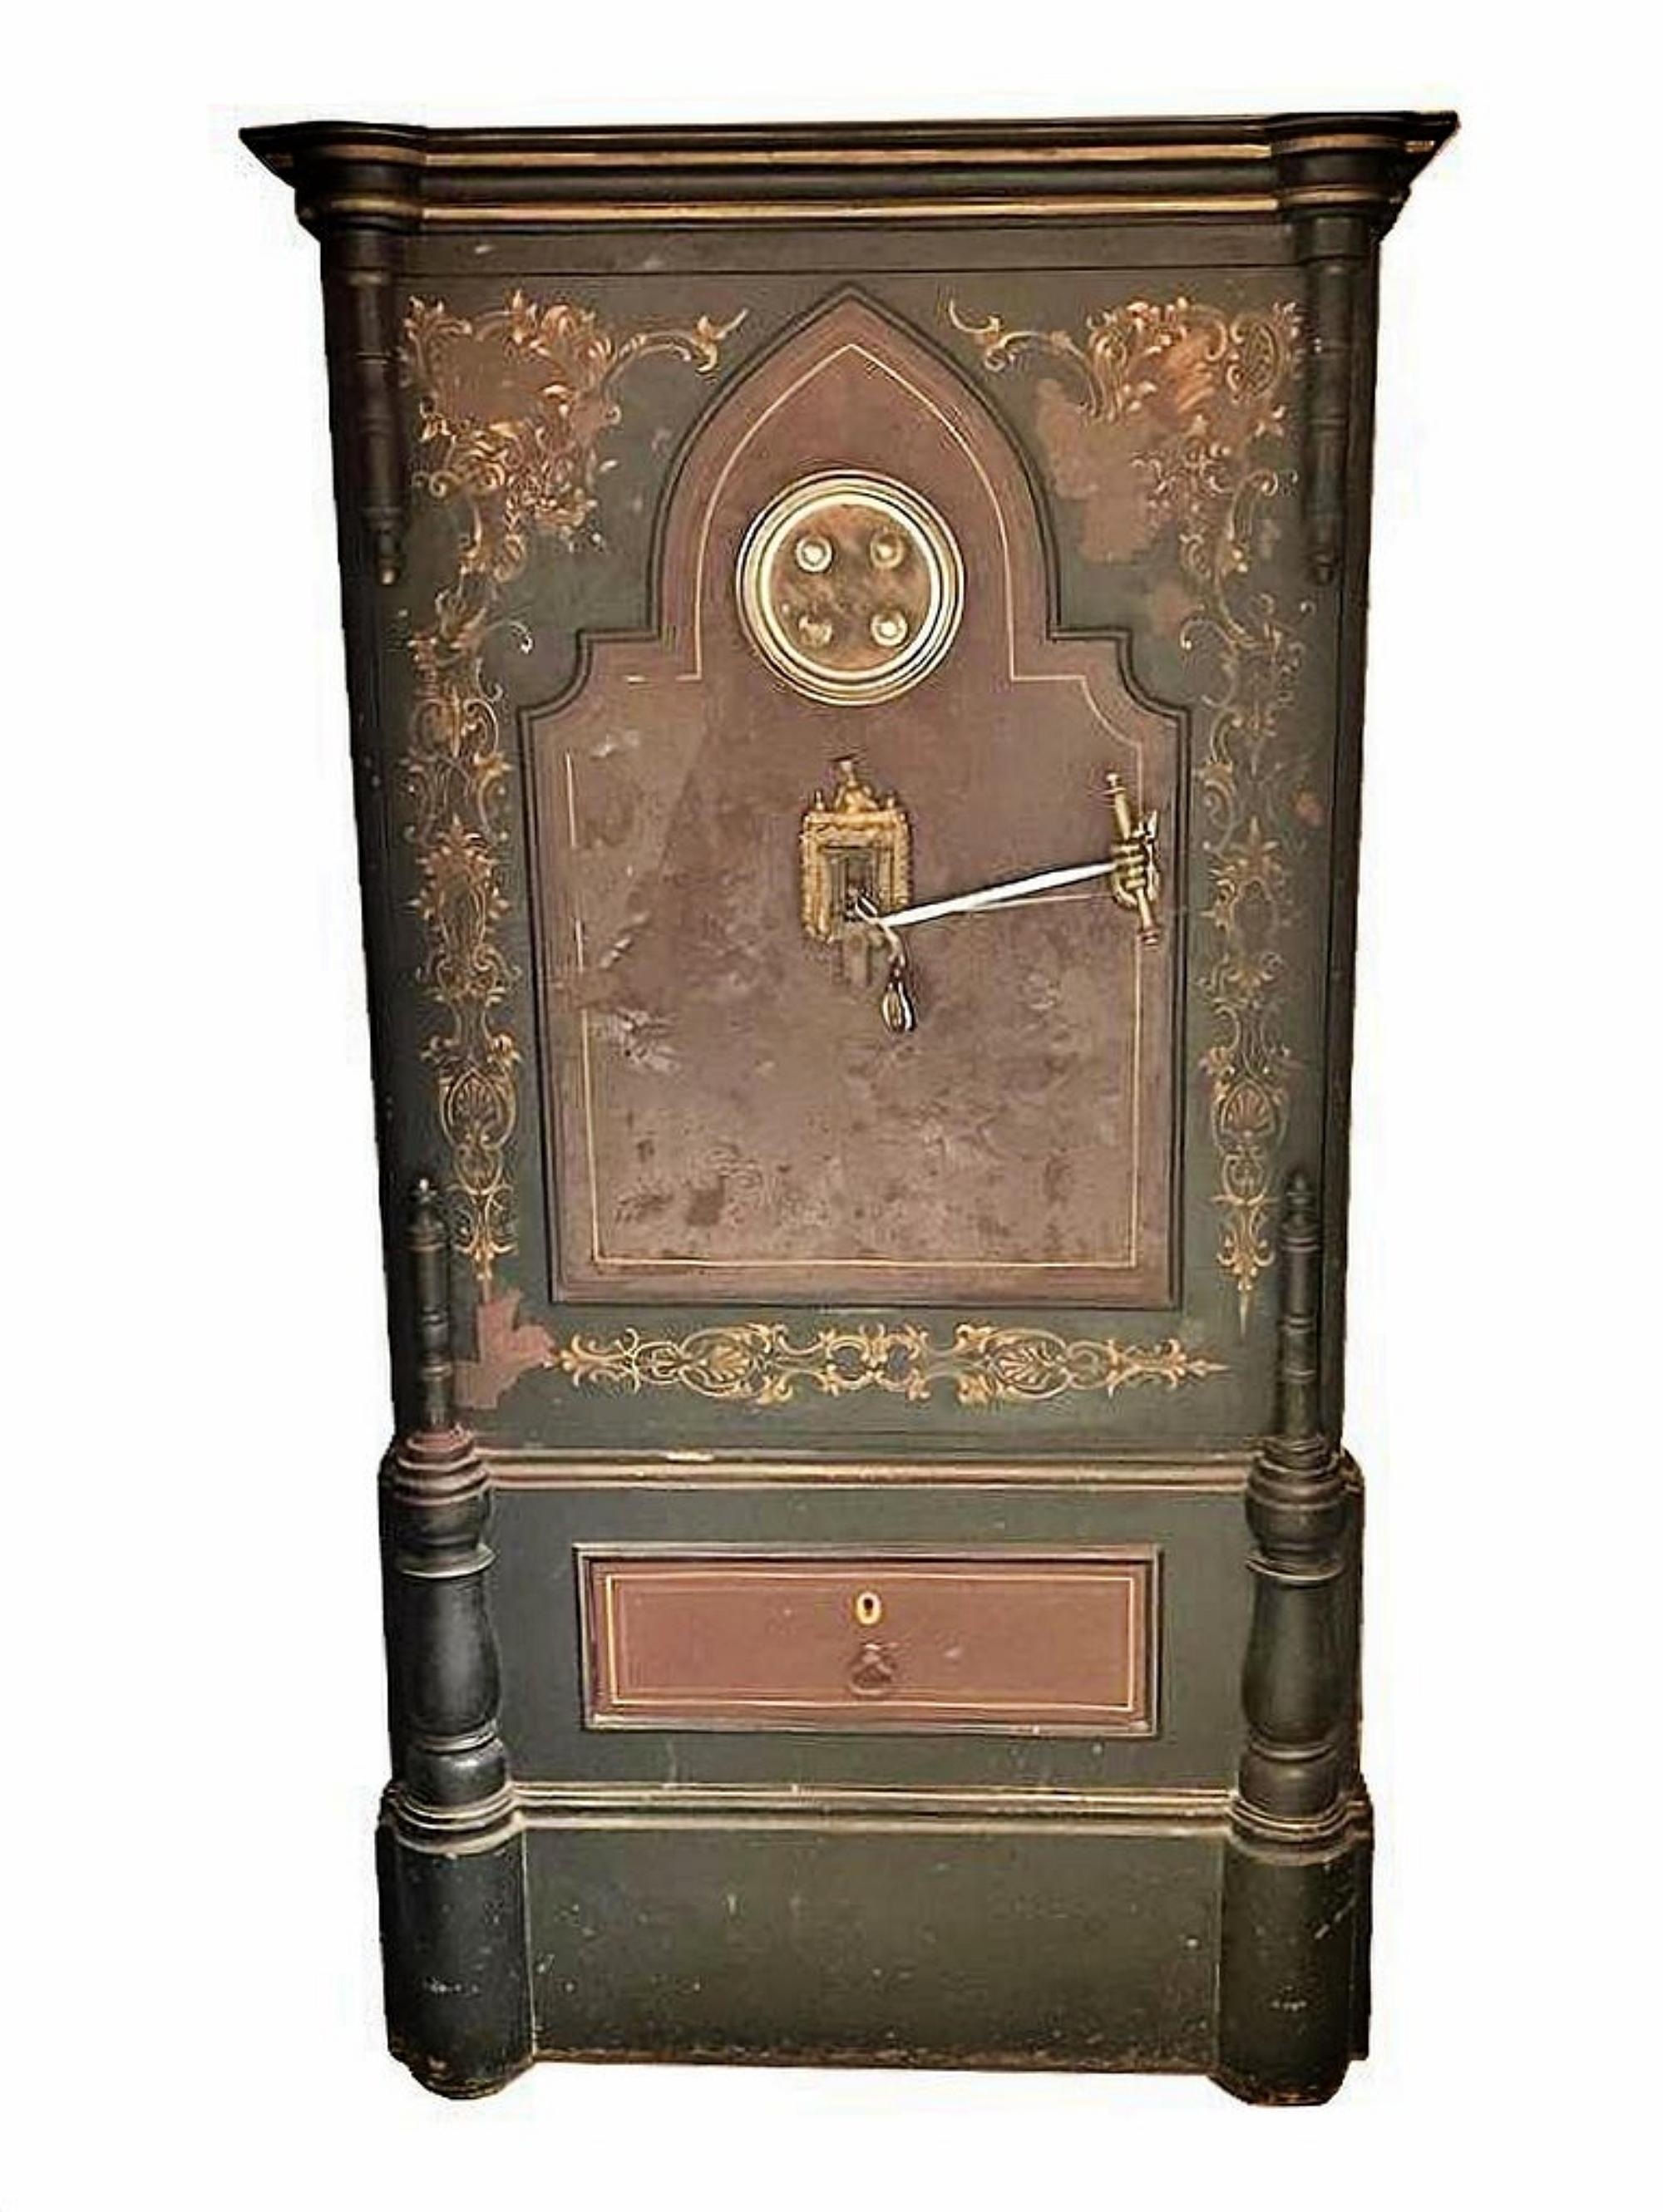 FRENCH SAFE

du 19ème siècle
en fer, en bois et autres matériaux.
Décoration peinte avec un tiroir.
Avec clé.
Dim. : 165 x 80 x 62 cm.
de bonnes conditions.